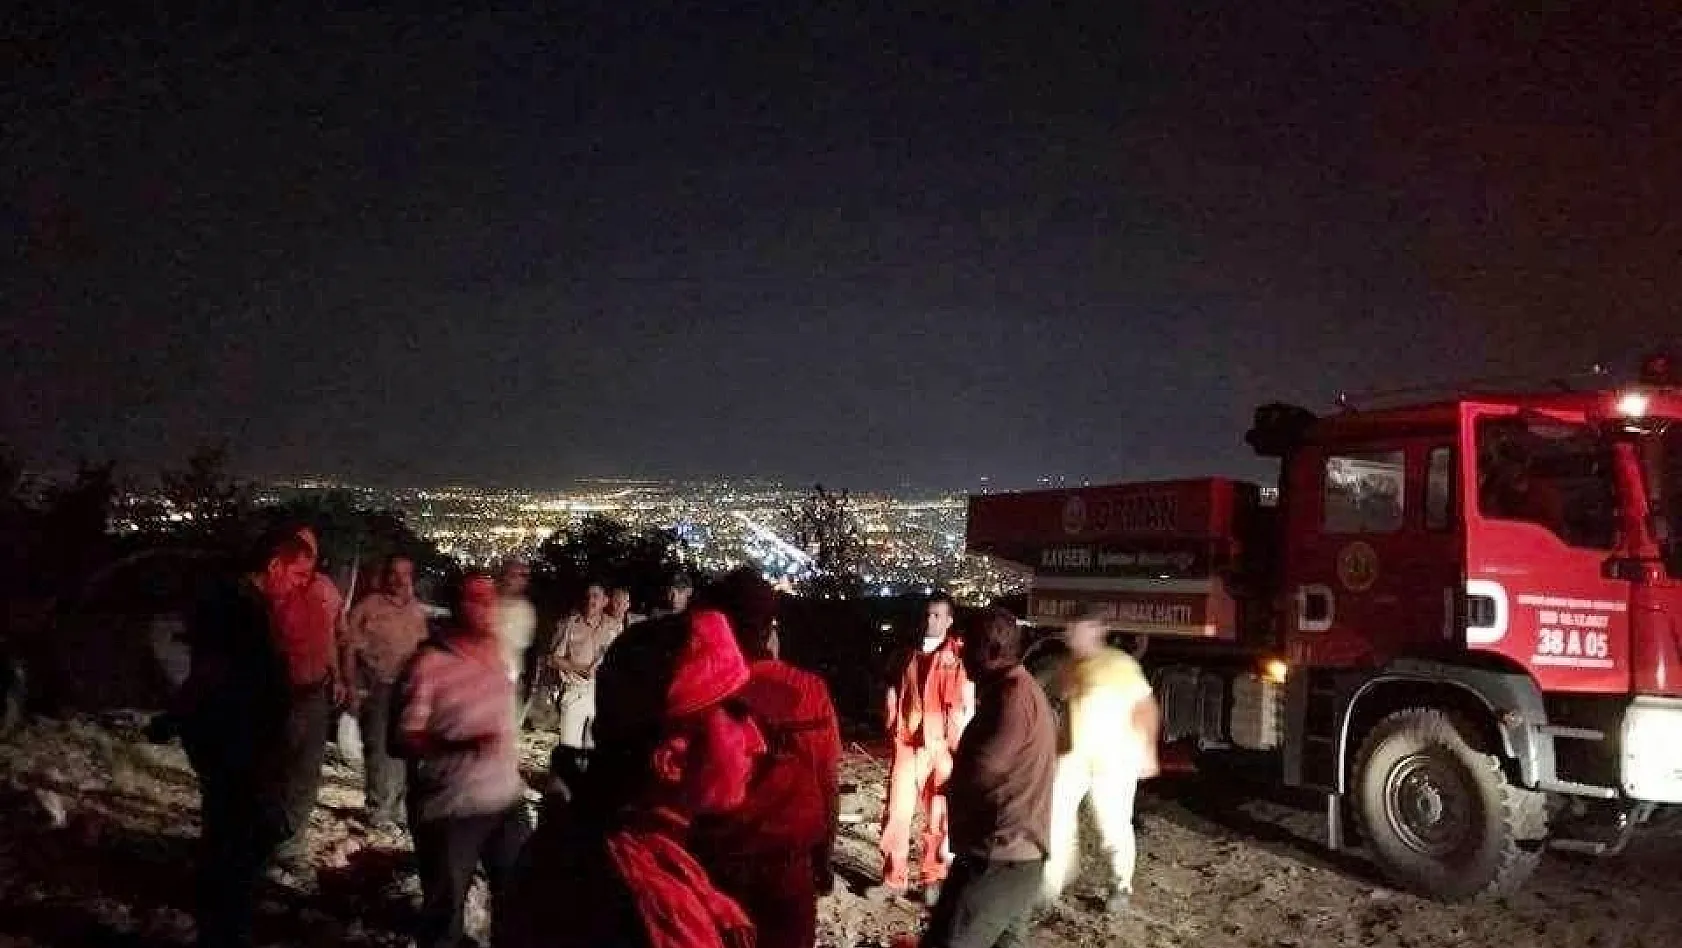 Ali Dağı'ndaki yangına Orman Bölge Müdürlüğü 49 personel ile müdahale etti